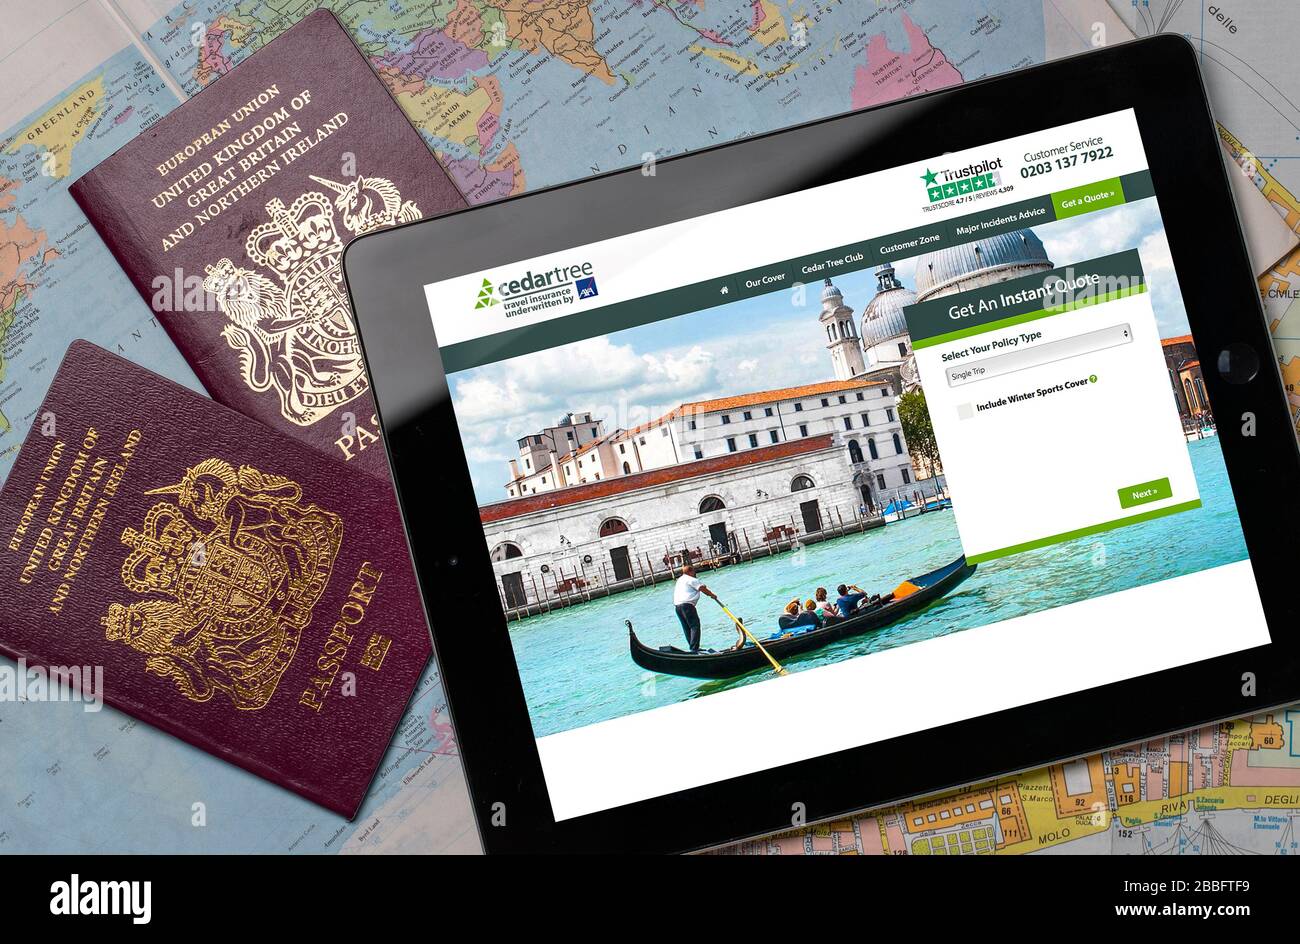 Cedartree Travel Insurance Website auf einem iPad oder Tablet. (Nur redaktionelle Verwendung) Stockfoto